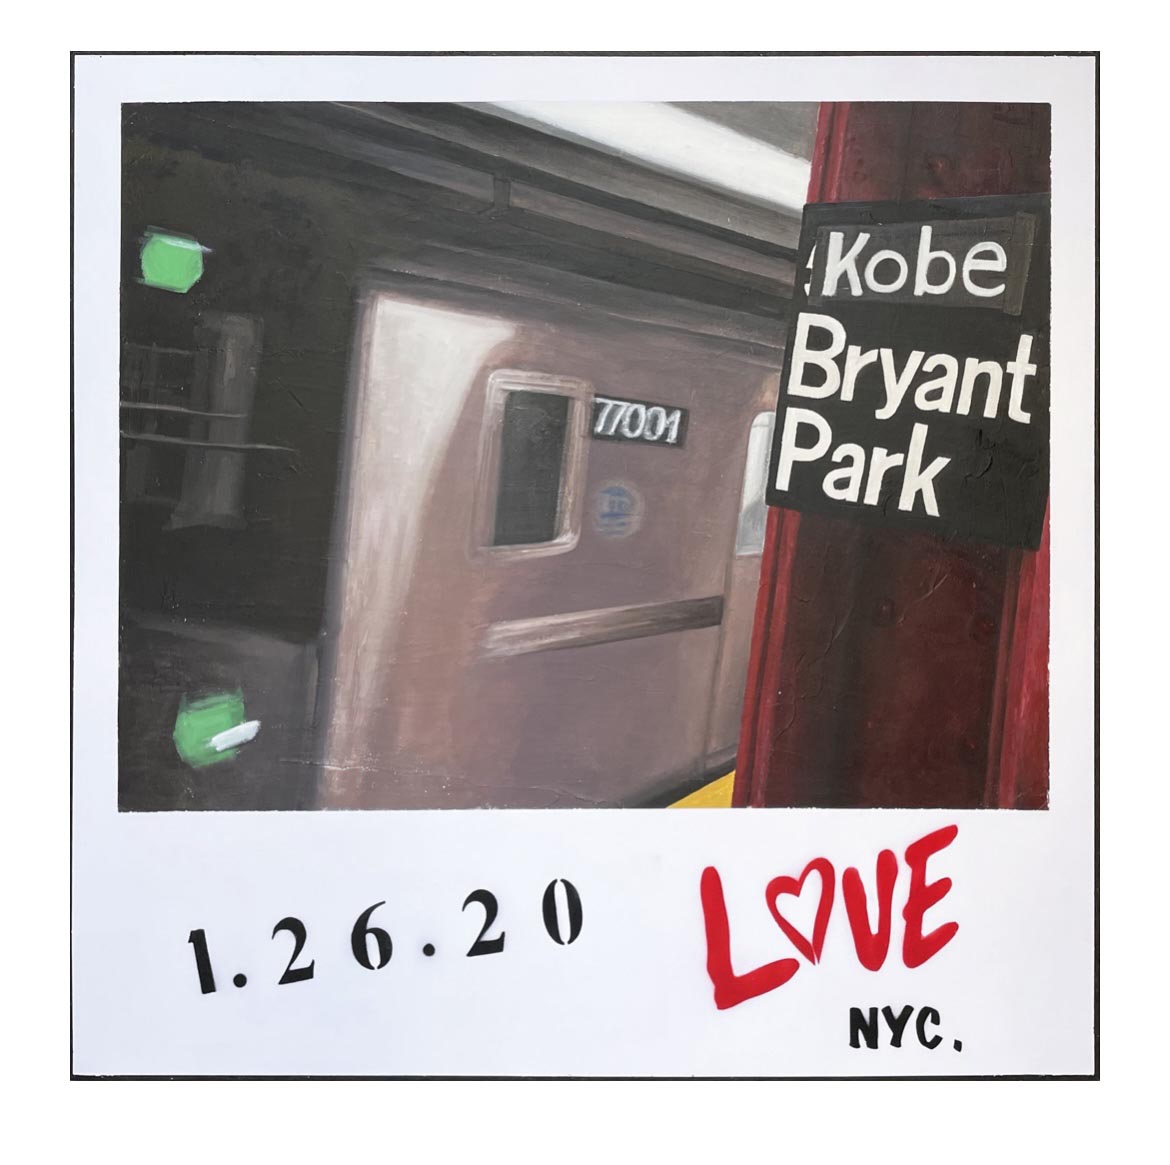 Kobe Bryant park